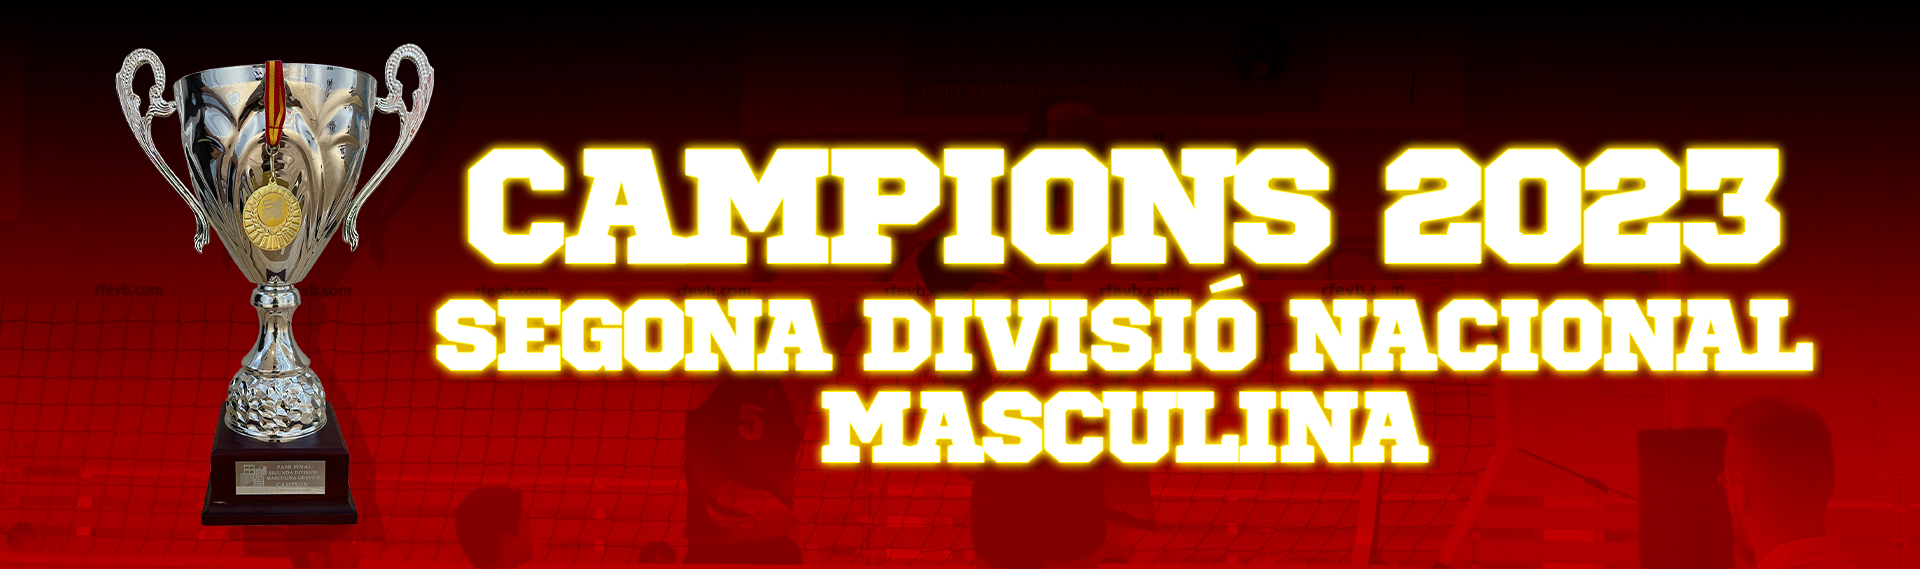 Campions de Segona División Nacional Masculina